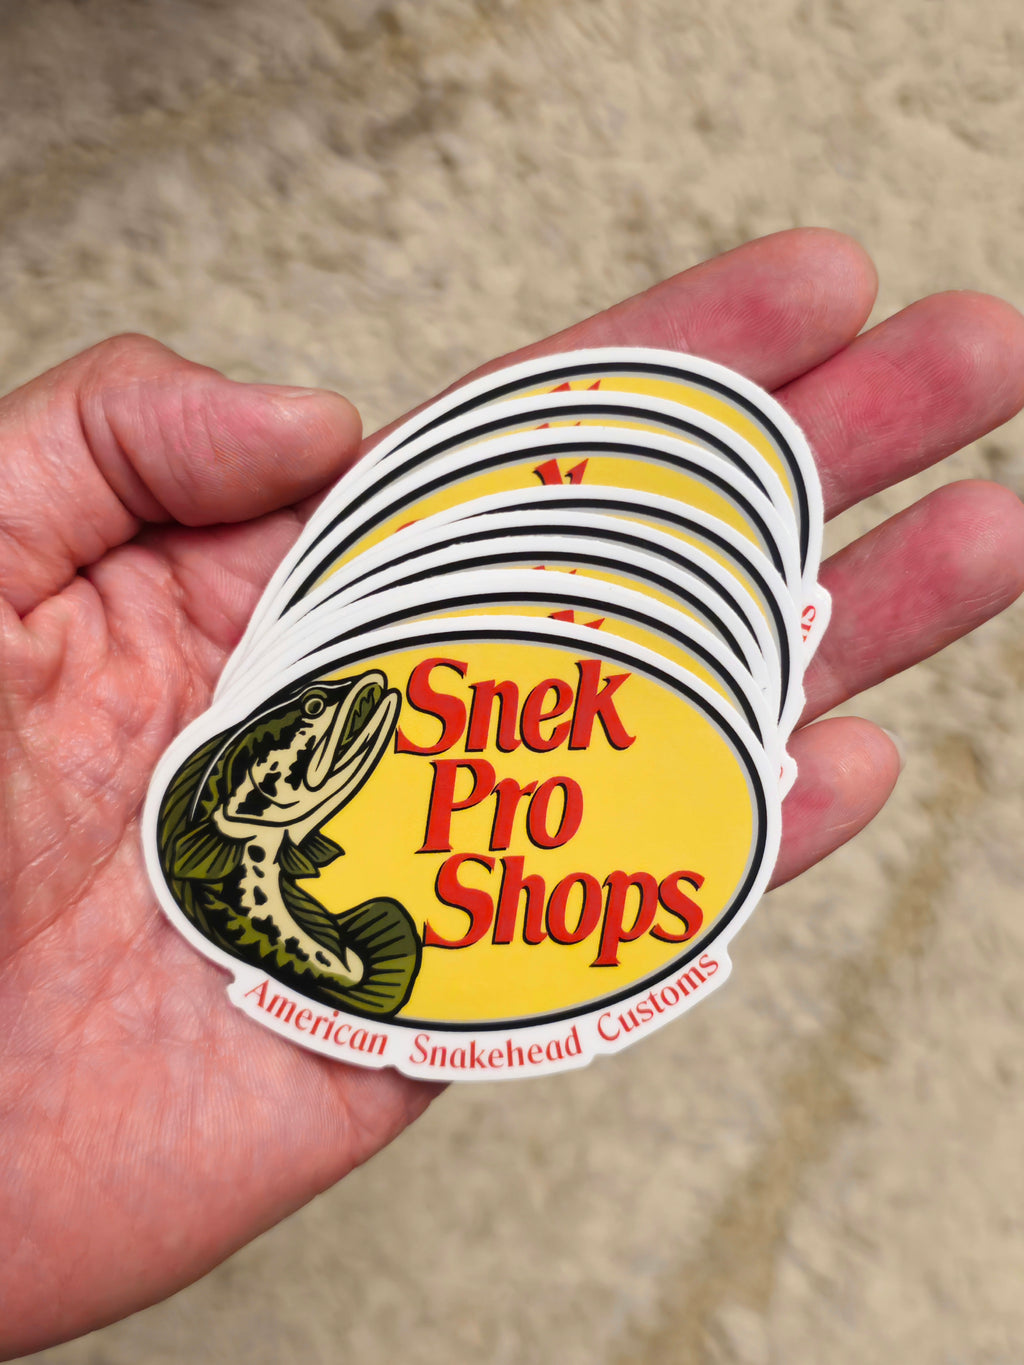 Snek Pro Shops